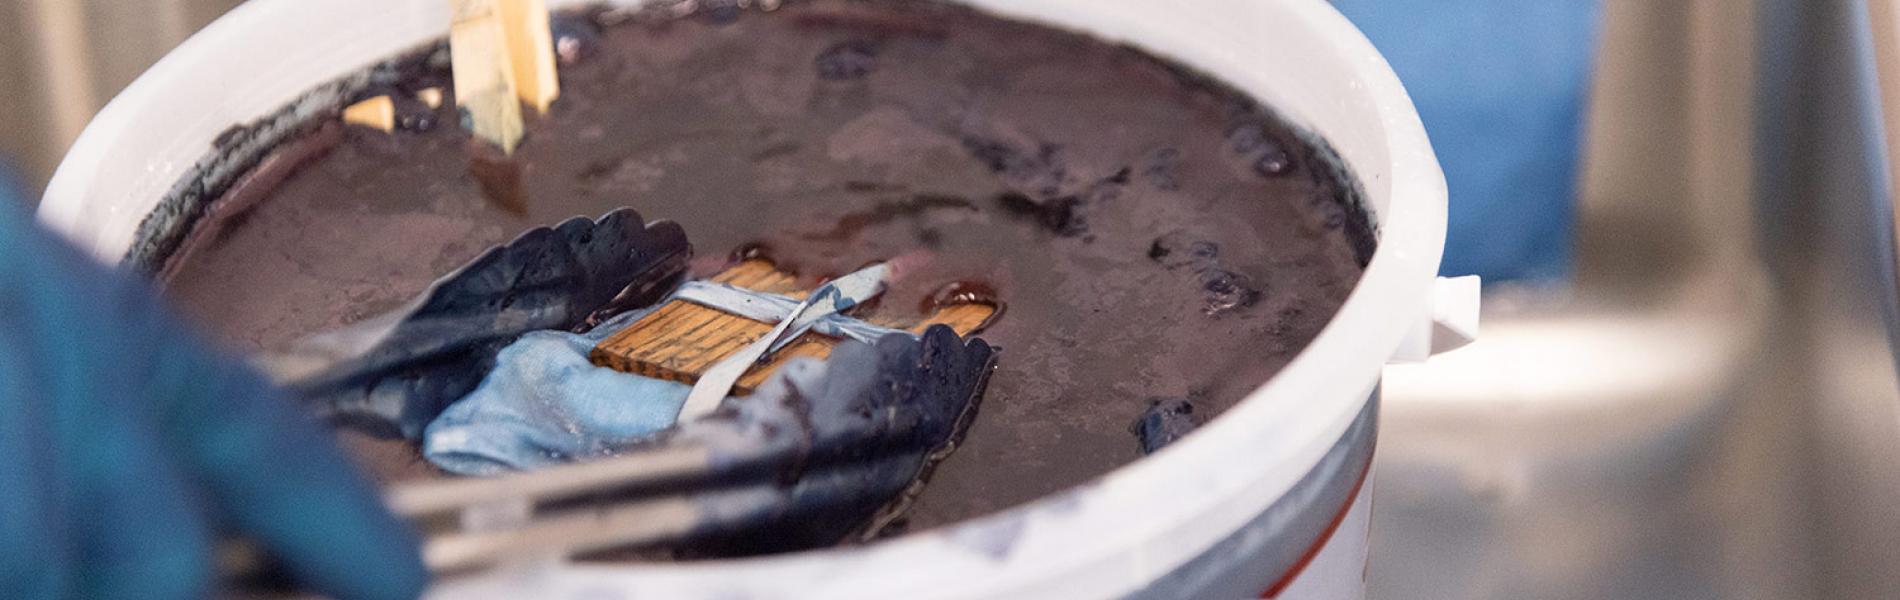 Up-close photo of indigo dye vat